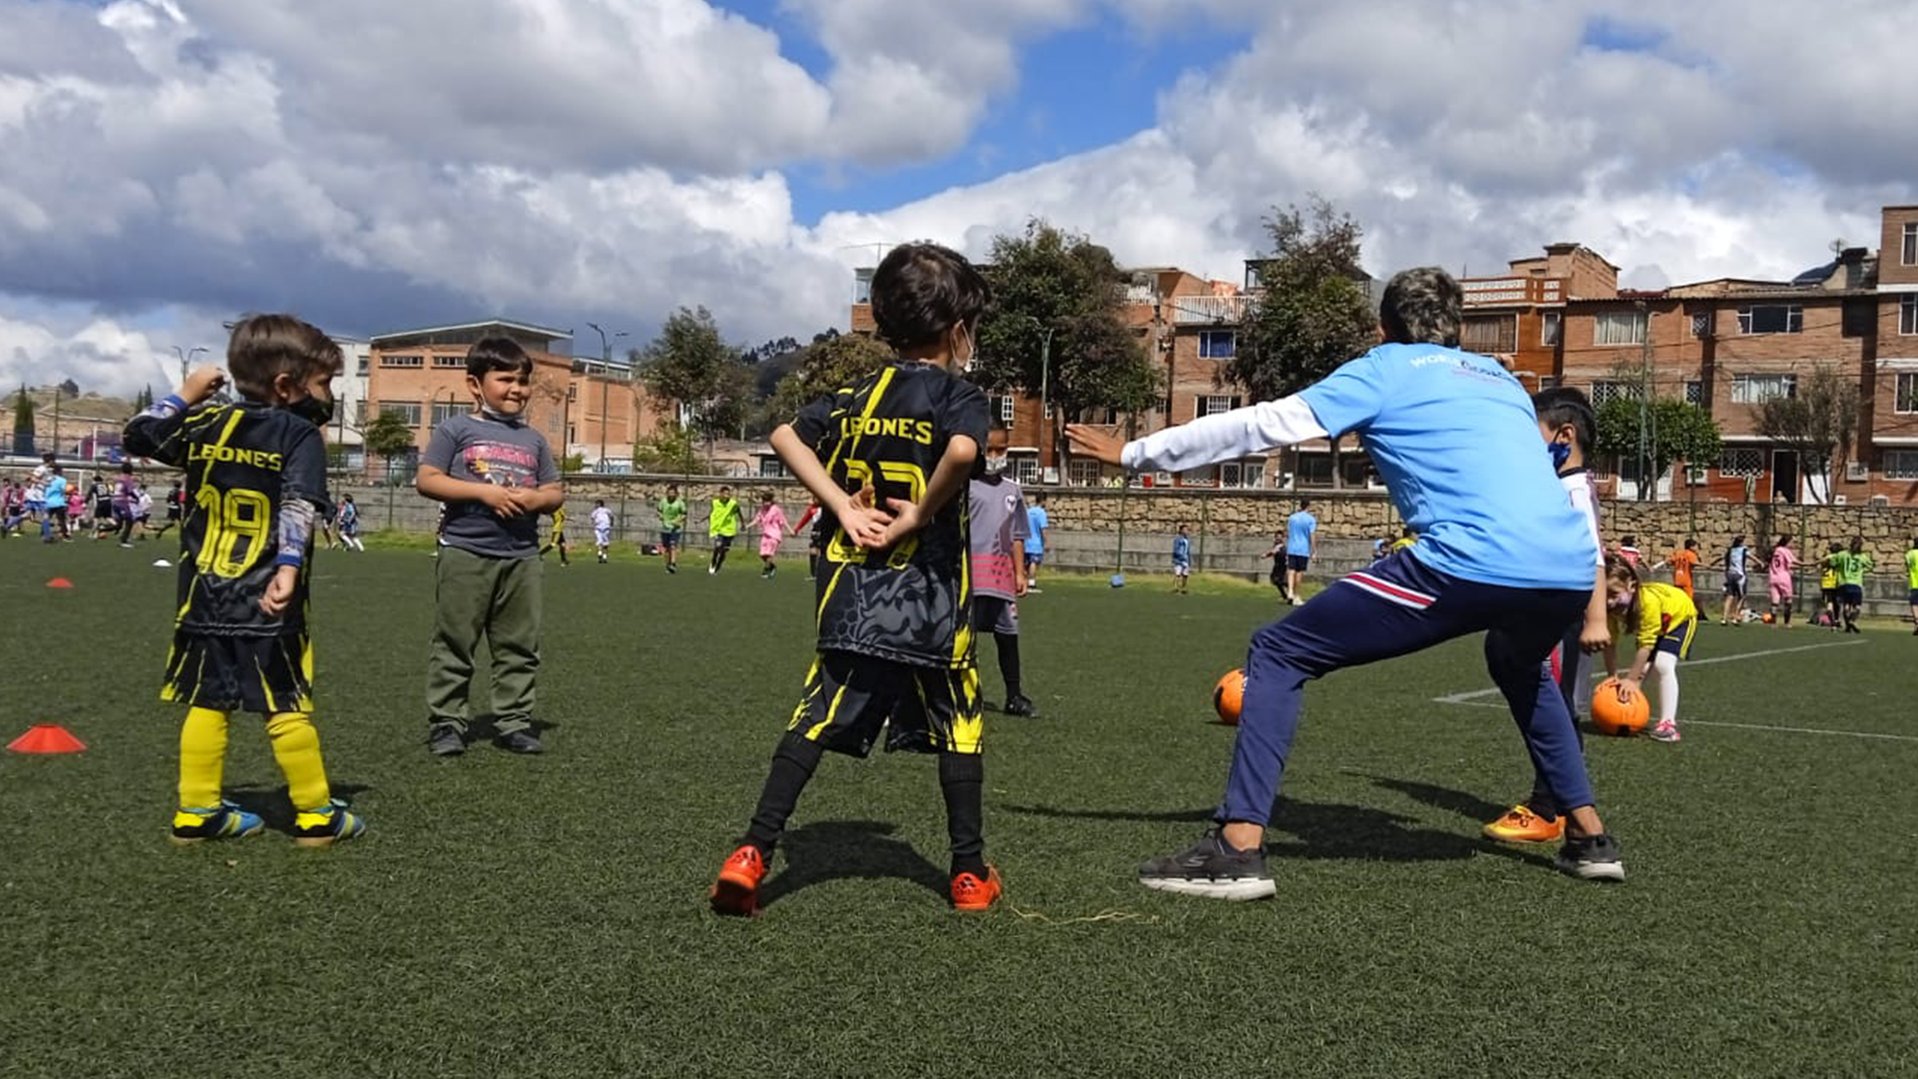 Voetbal verbindt. Daarom zet War Child samen met KNVB voetbal in om de situatie van Colombiaanse jongeren te verbeteren